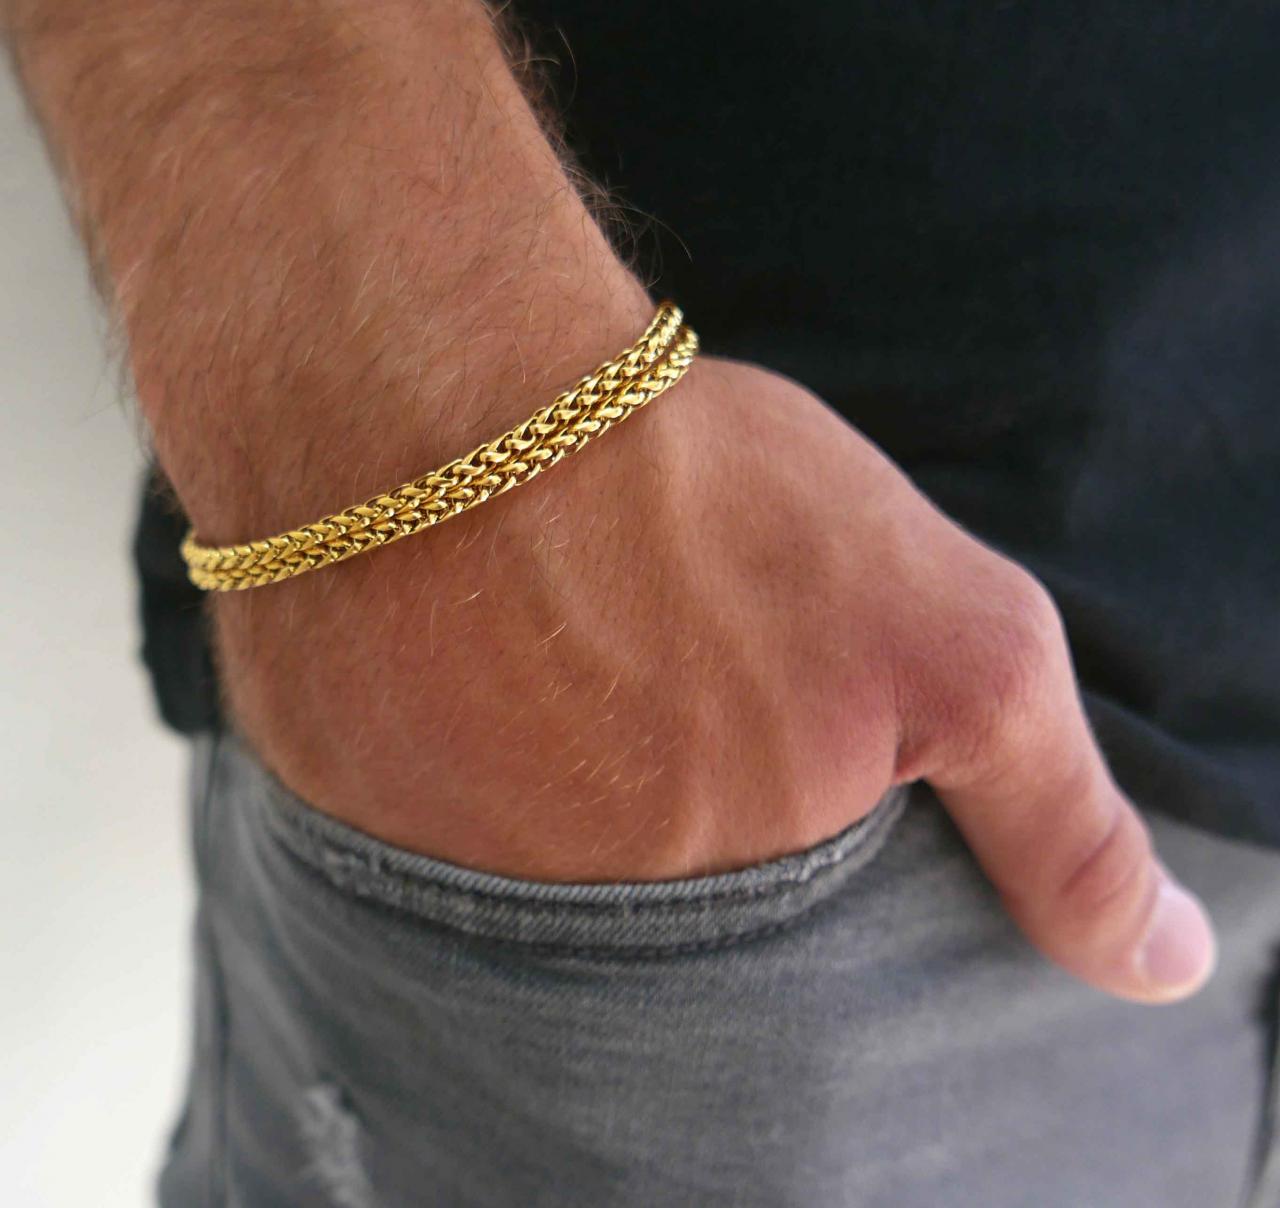 Men's Bracelet - Men's Gold Bracelets - Men's Chain Bracelet - Men's Cuff Bracelet - Men's Jewelry -